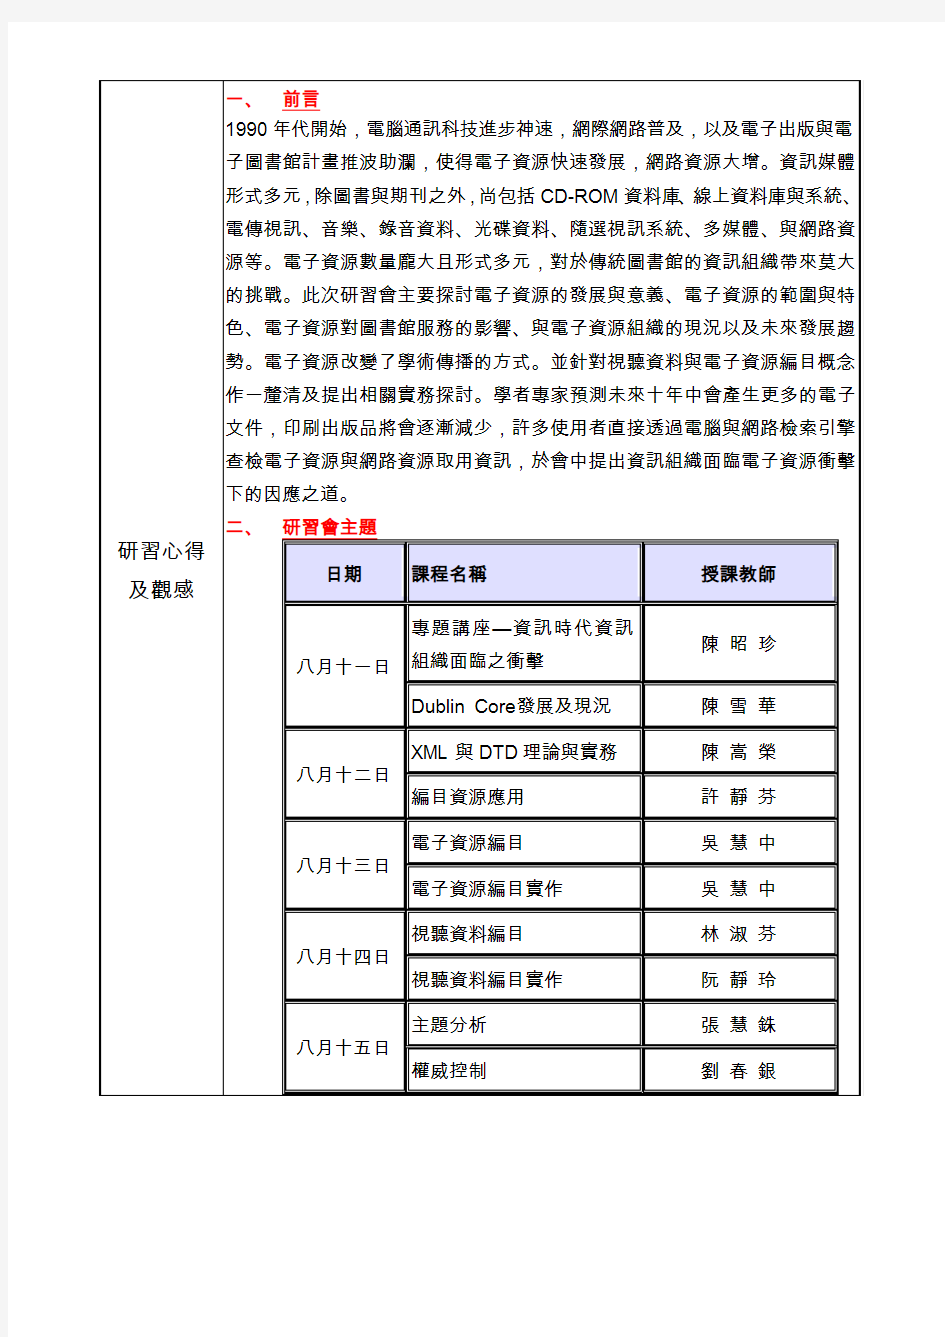 朝阳科技大学补助专任行政人员参加国内研习结案报告